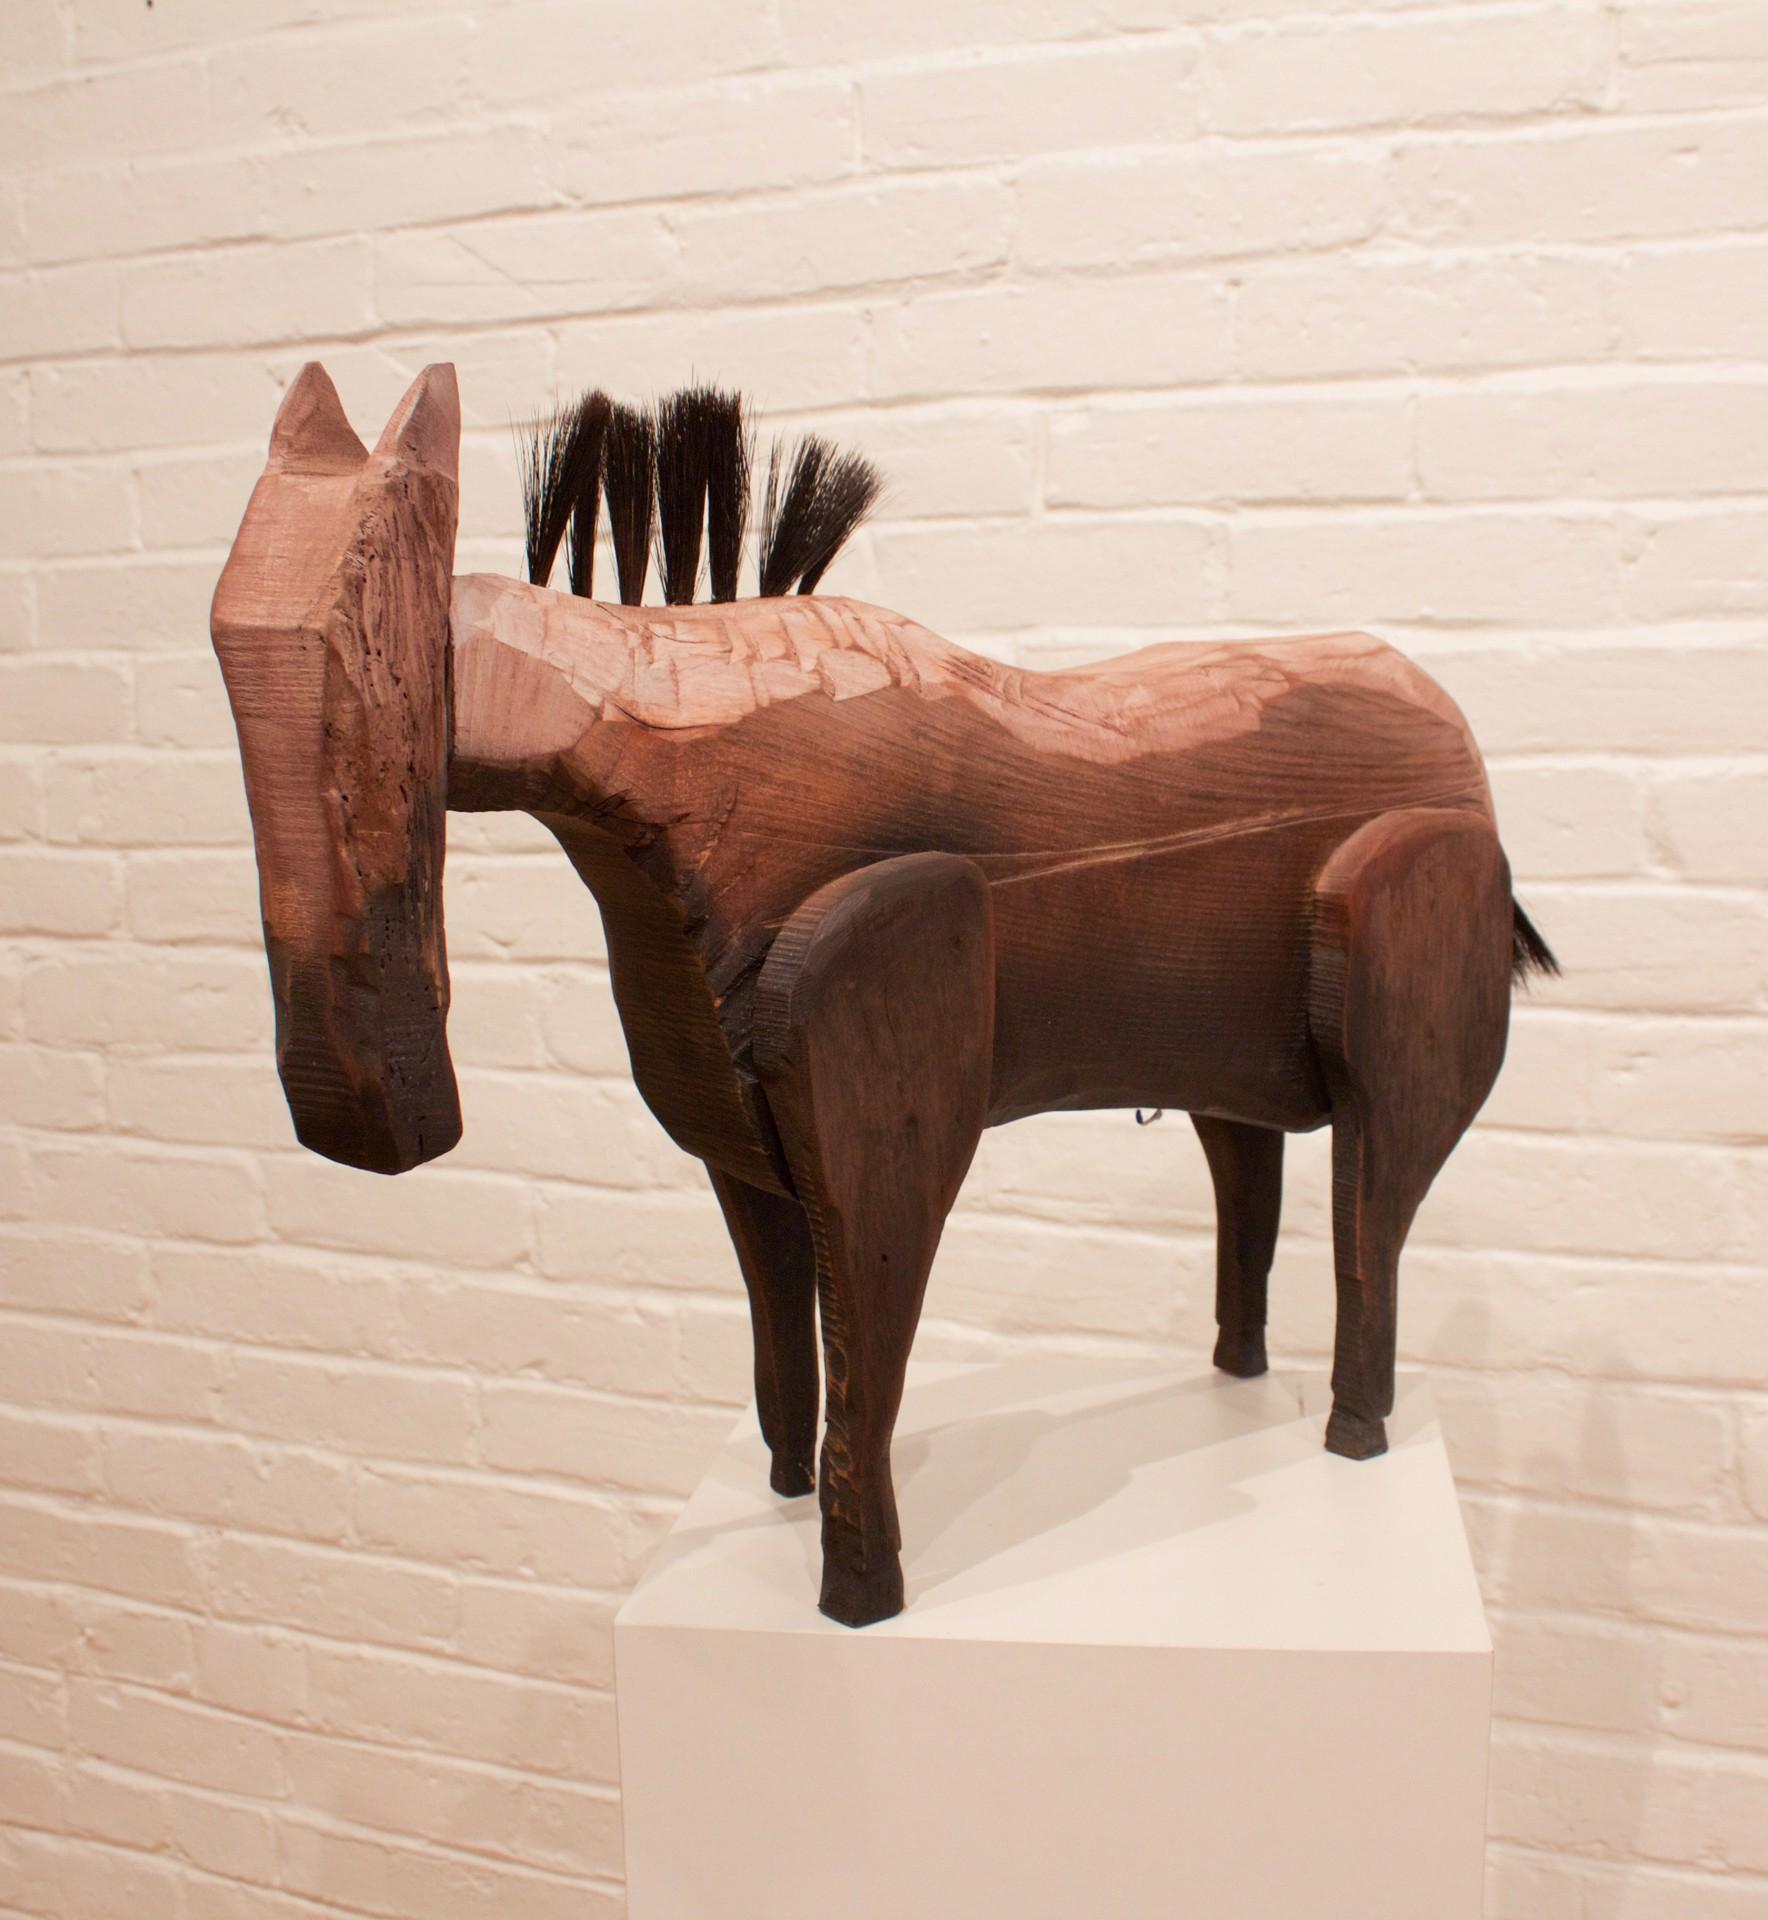 Ancient Horse - Art by Matthew Barter